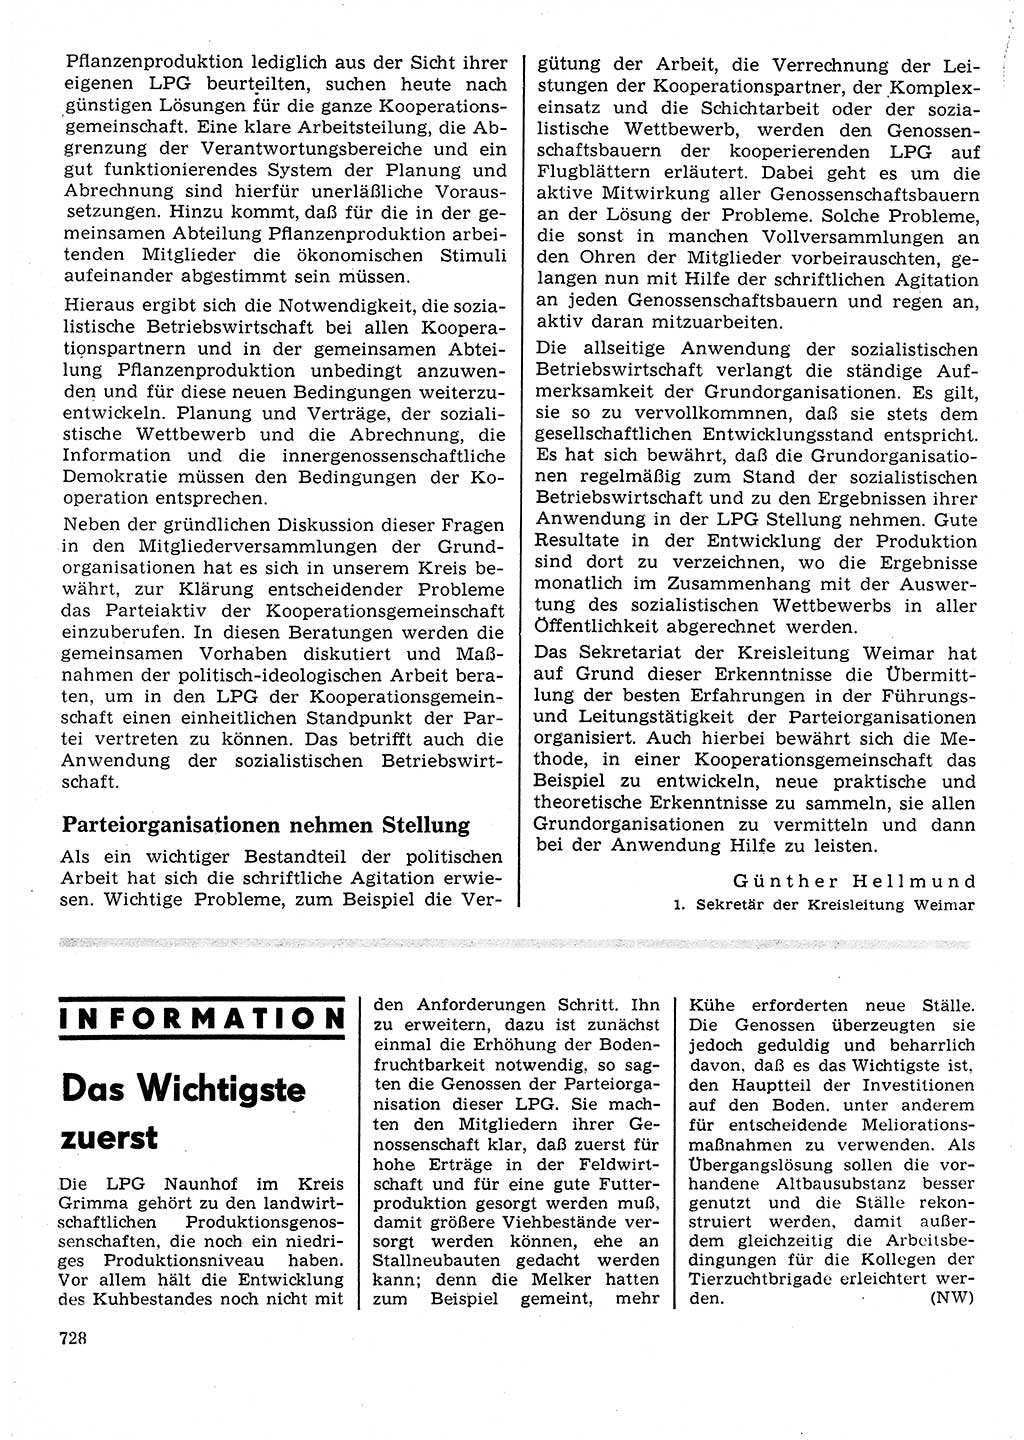 Neuer Weg (NW), Organ des Zentralkomitees (ZK) der SED (Sozialistische Einheitspartei Deutschlands) für Fragen des Parteilebens, 25. Jahrgang [Deutsche Demokratische Republik (DDR)] 1970, Seite 728 (NW ZK SED DDR 1970, S. 728)